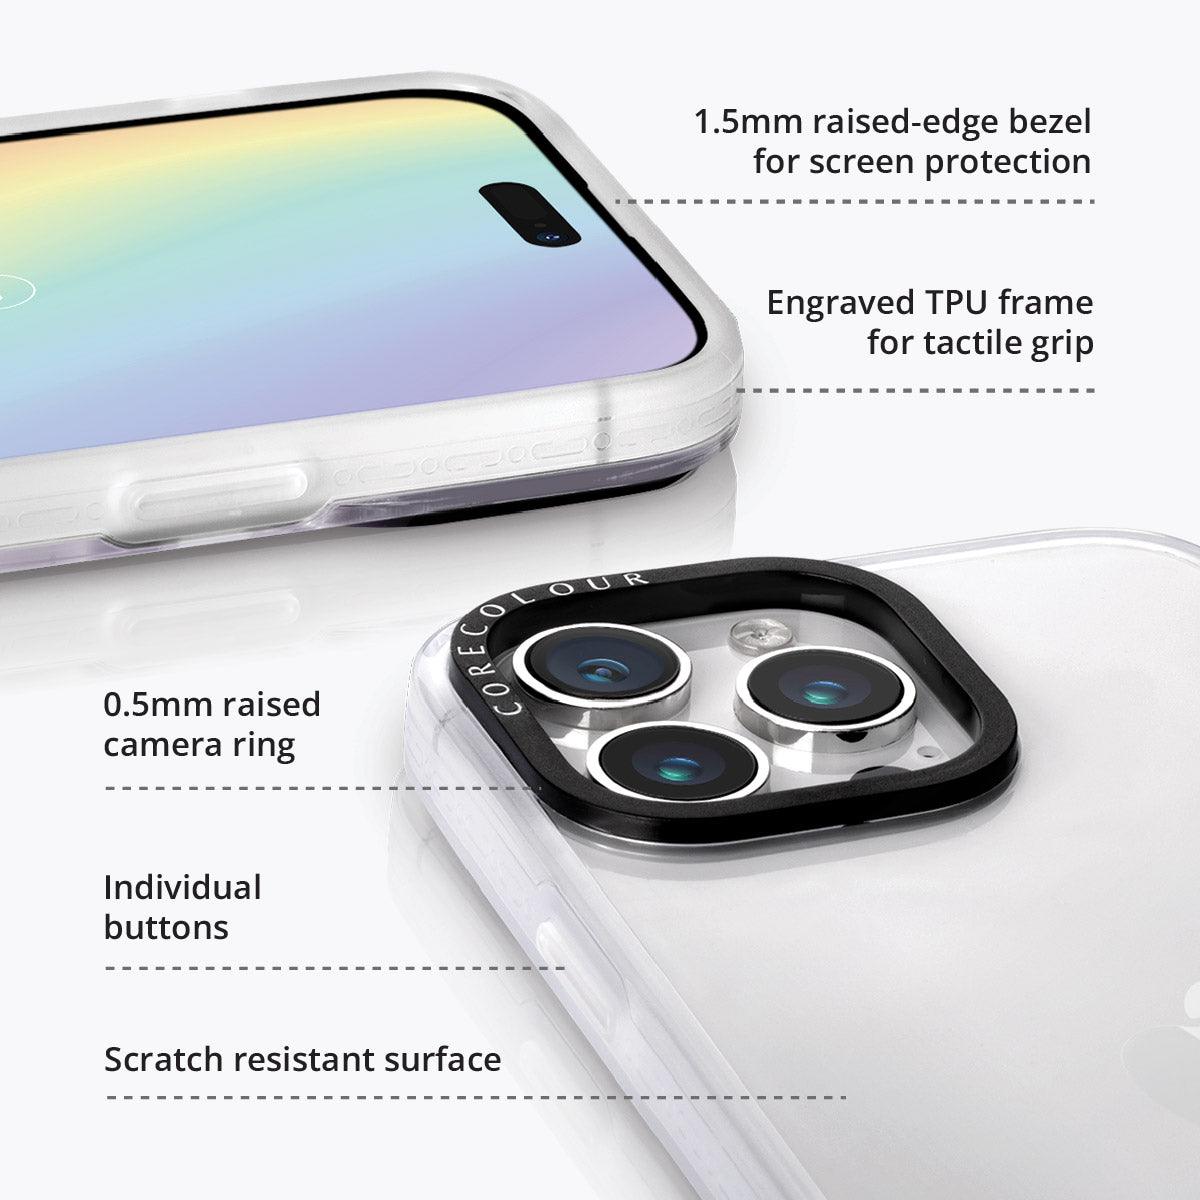 iPhone 13 Pro Sunny-Side Up Egg Phone Case - CORECOLOUR AU